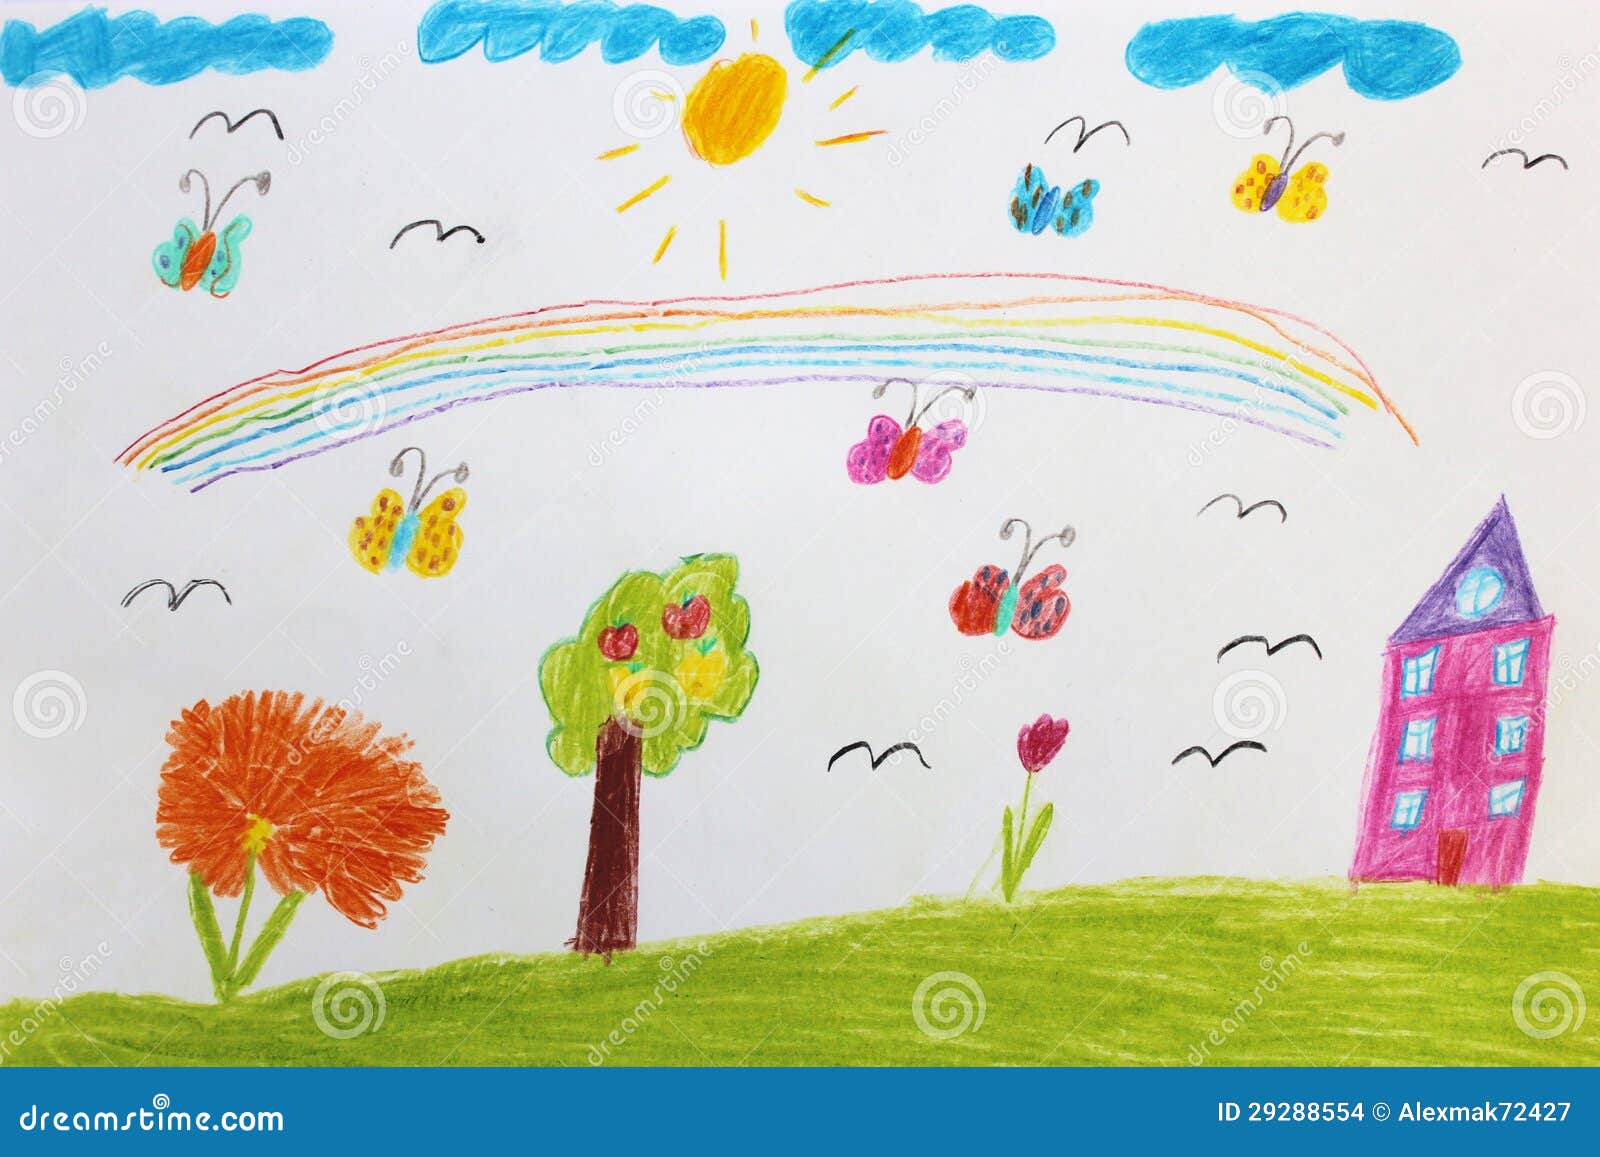 Verwonderend De Tekening Van Kinderen Met Vlinders En Bloemen Stock Illustratie BF-44